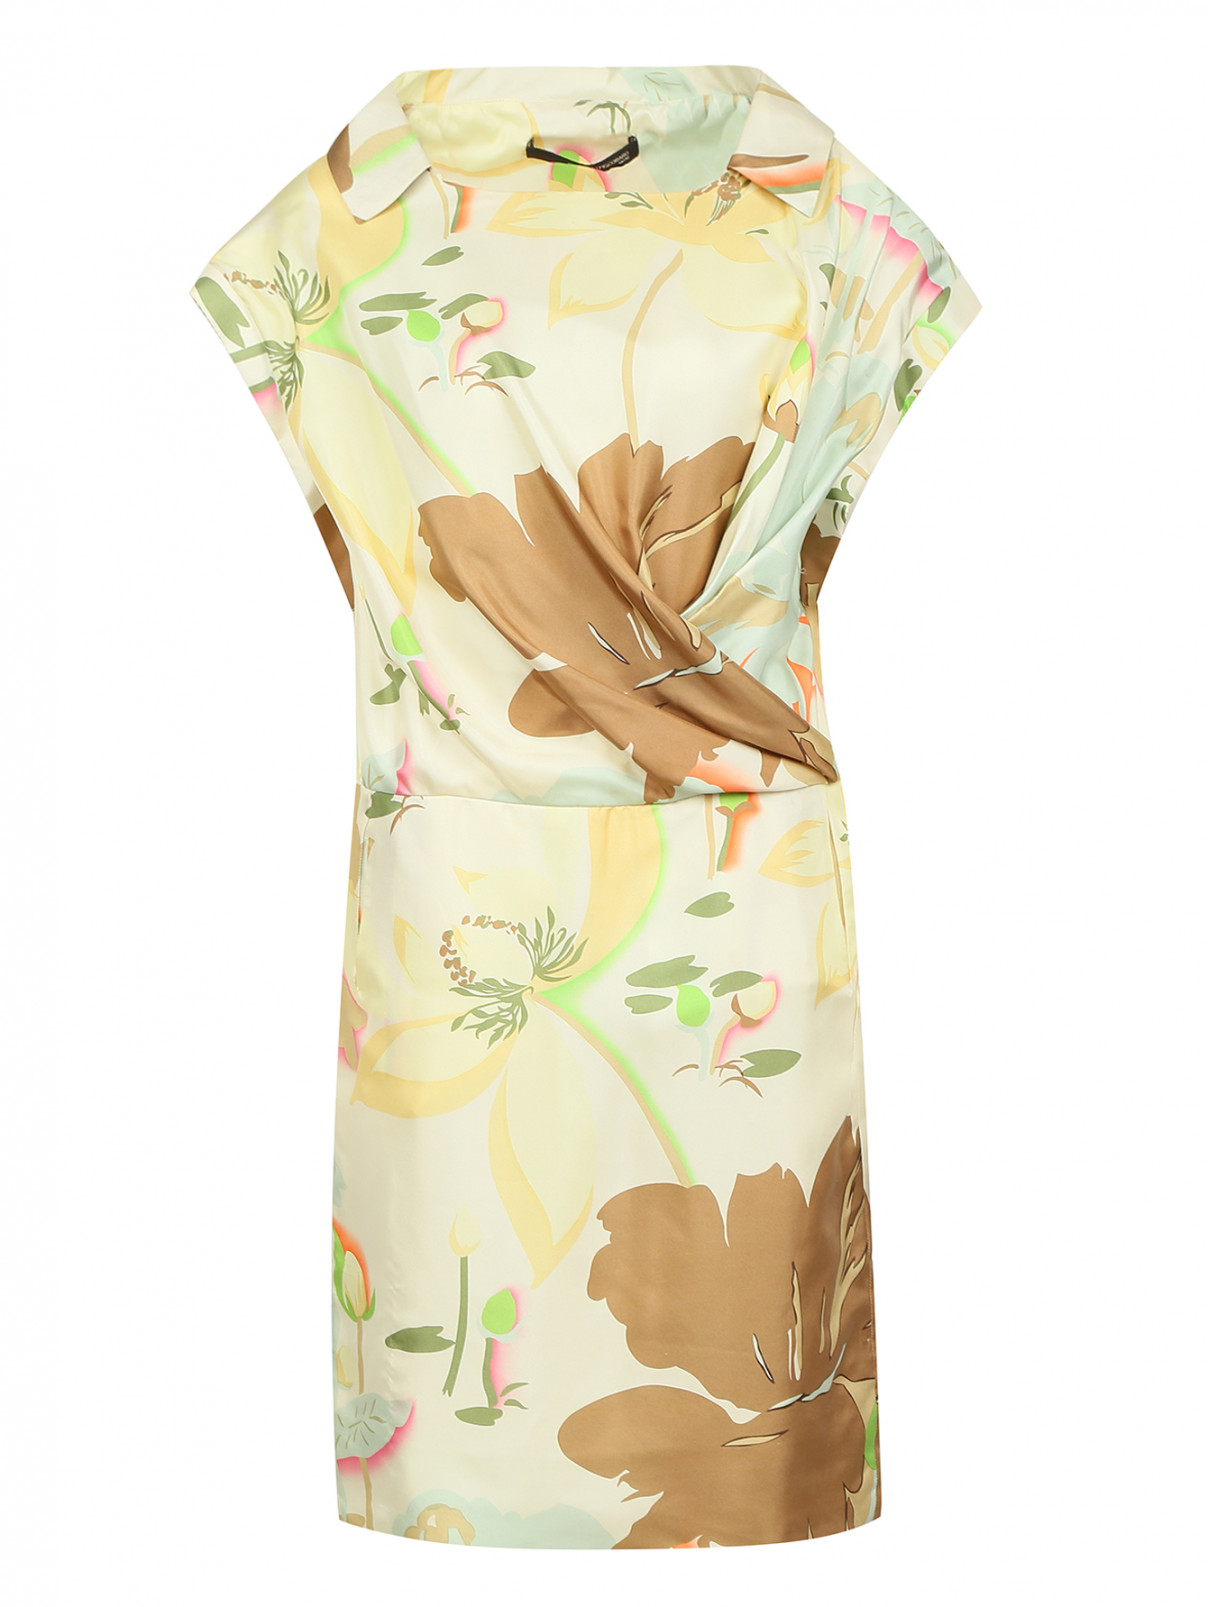 Платье из шелка  запахом и цветочным узором Maurizio Pecoraro  –  Общий вид  – Цвет:  Зеленый